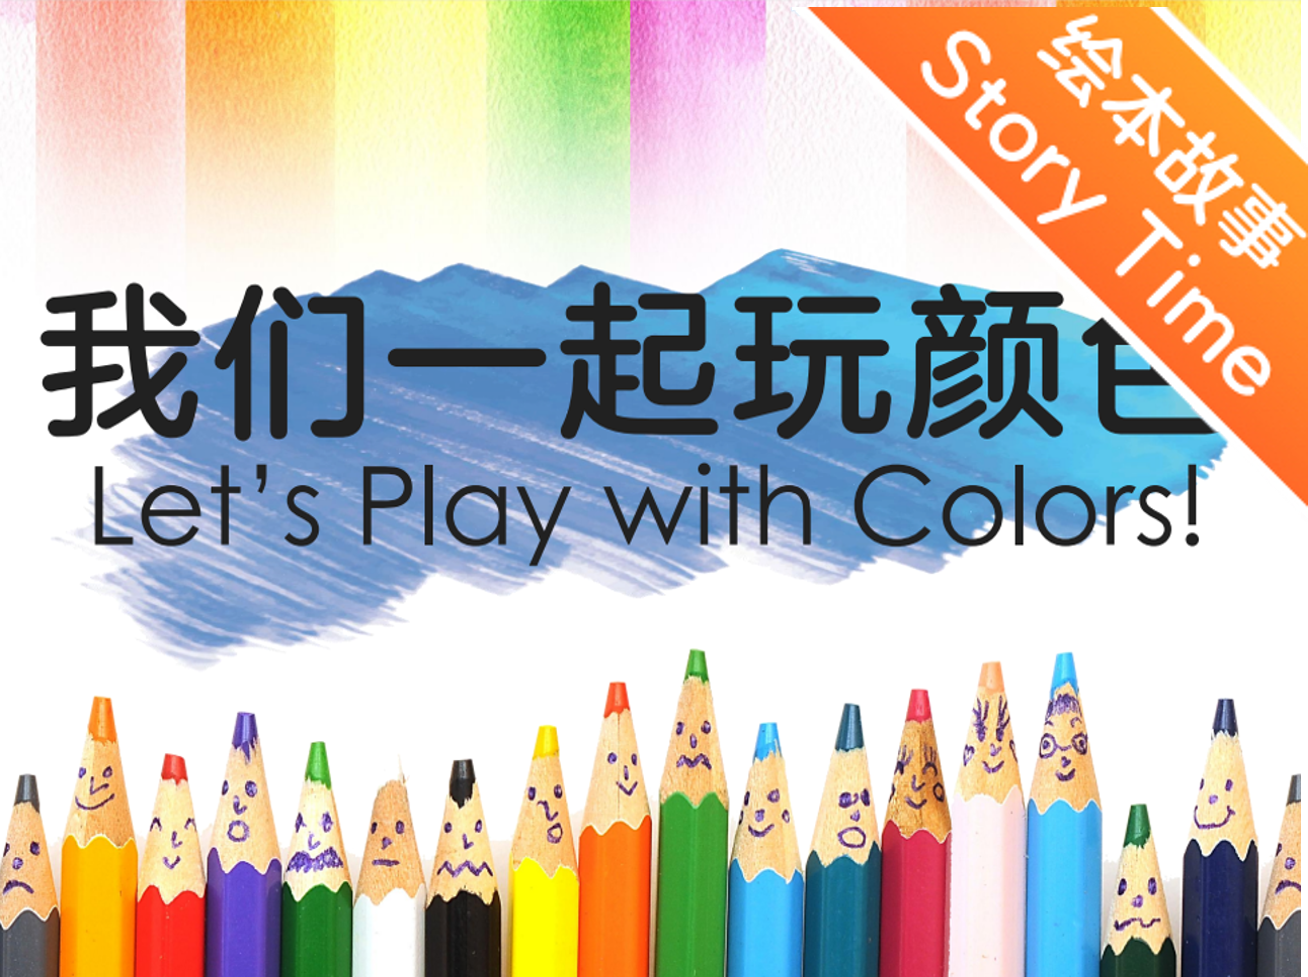 【双语成长课｜分级阅读故事会】【初级】第5讲 我们一起玩颜色！ Let's Play with Colors!